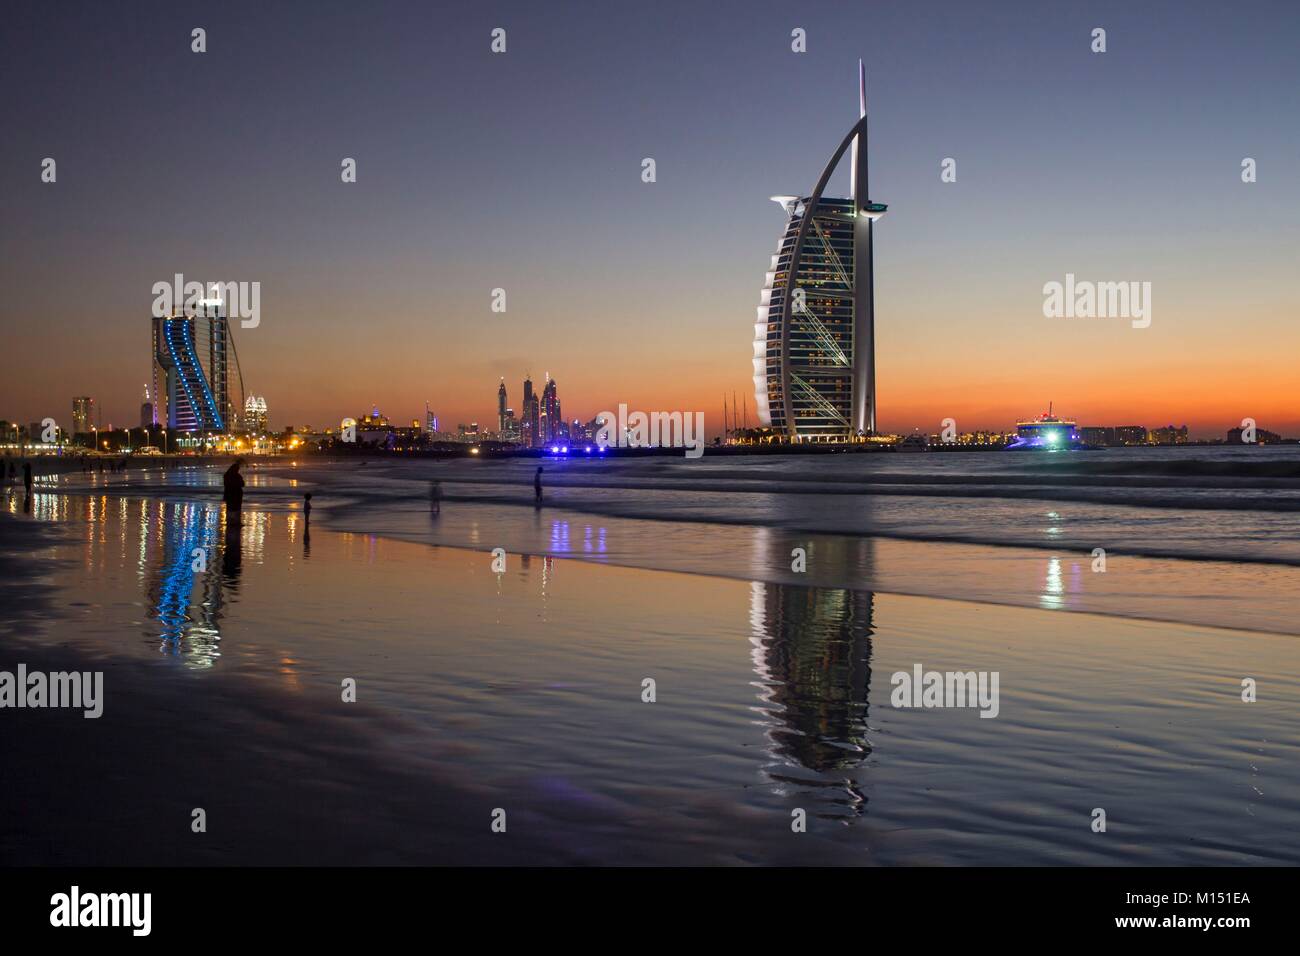 Emirats arabes unis, dubaï, plage près de l'hôtel Burj Al Arab Banque D'Images